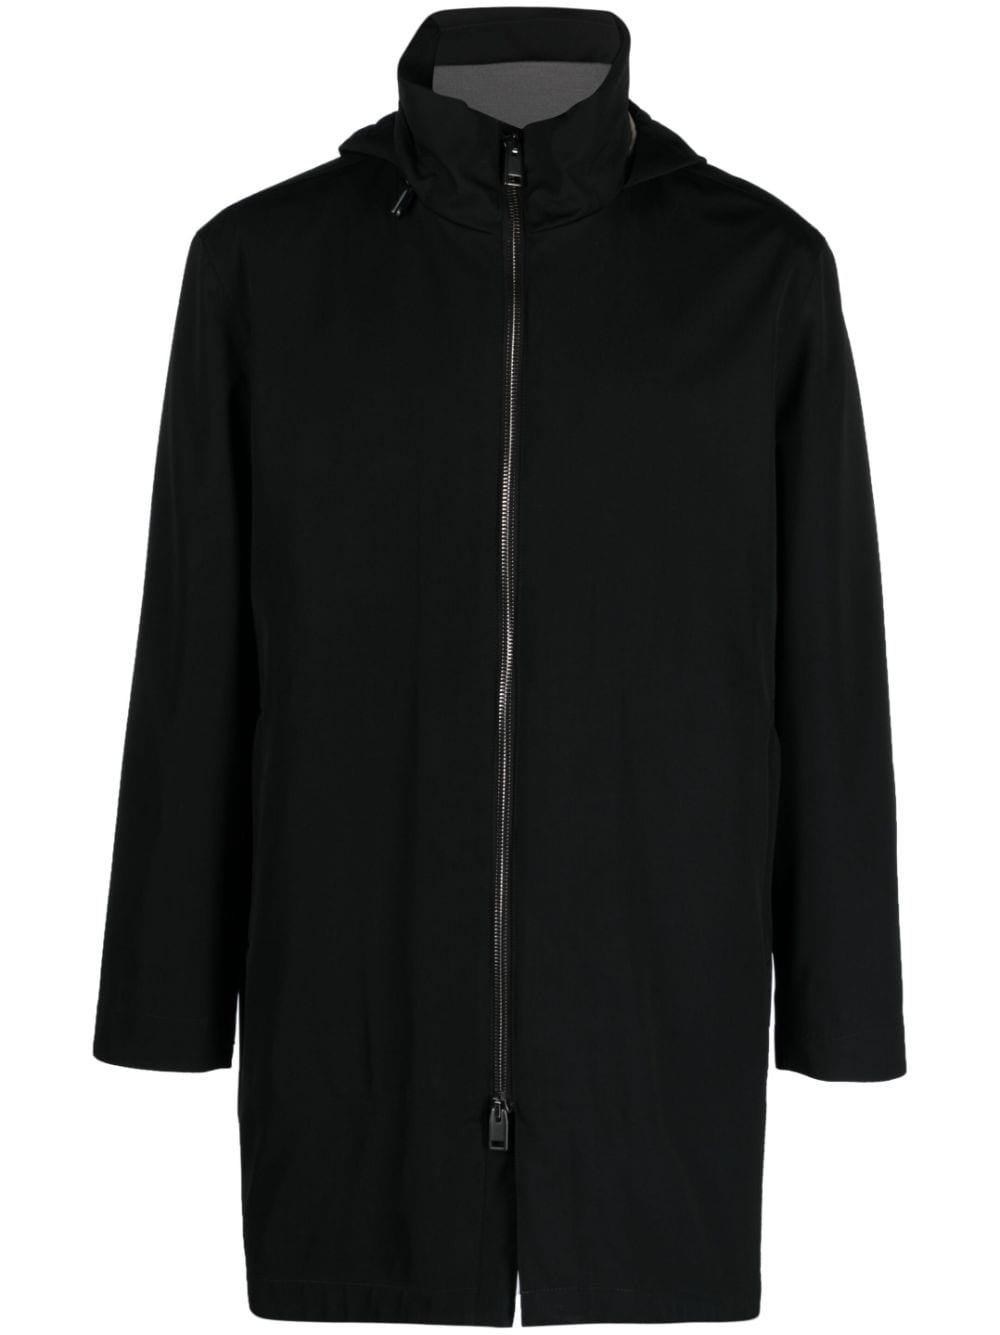 Brioni hooded cashmere-blend parka coat - WARDROB